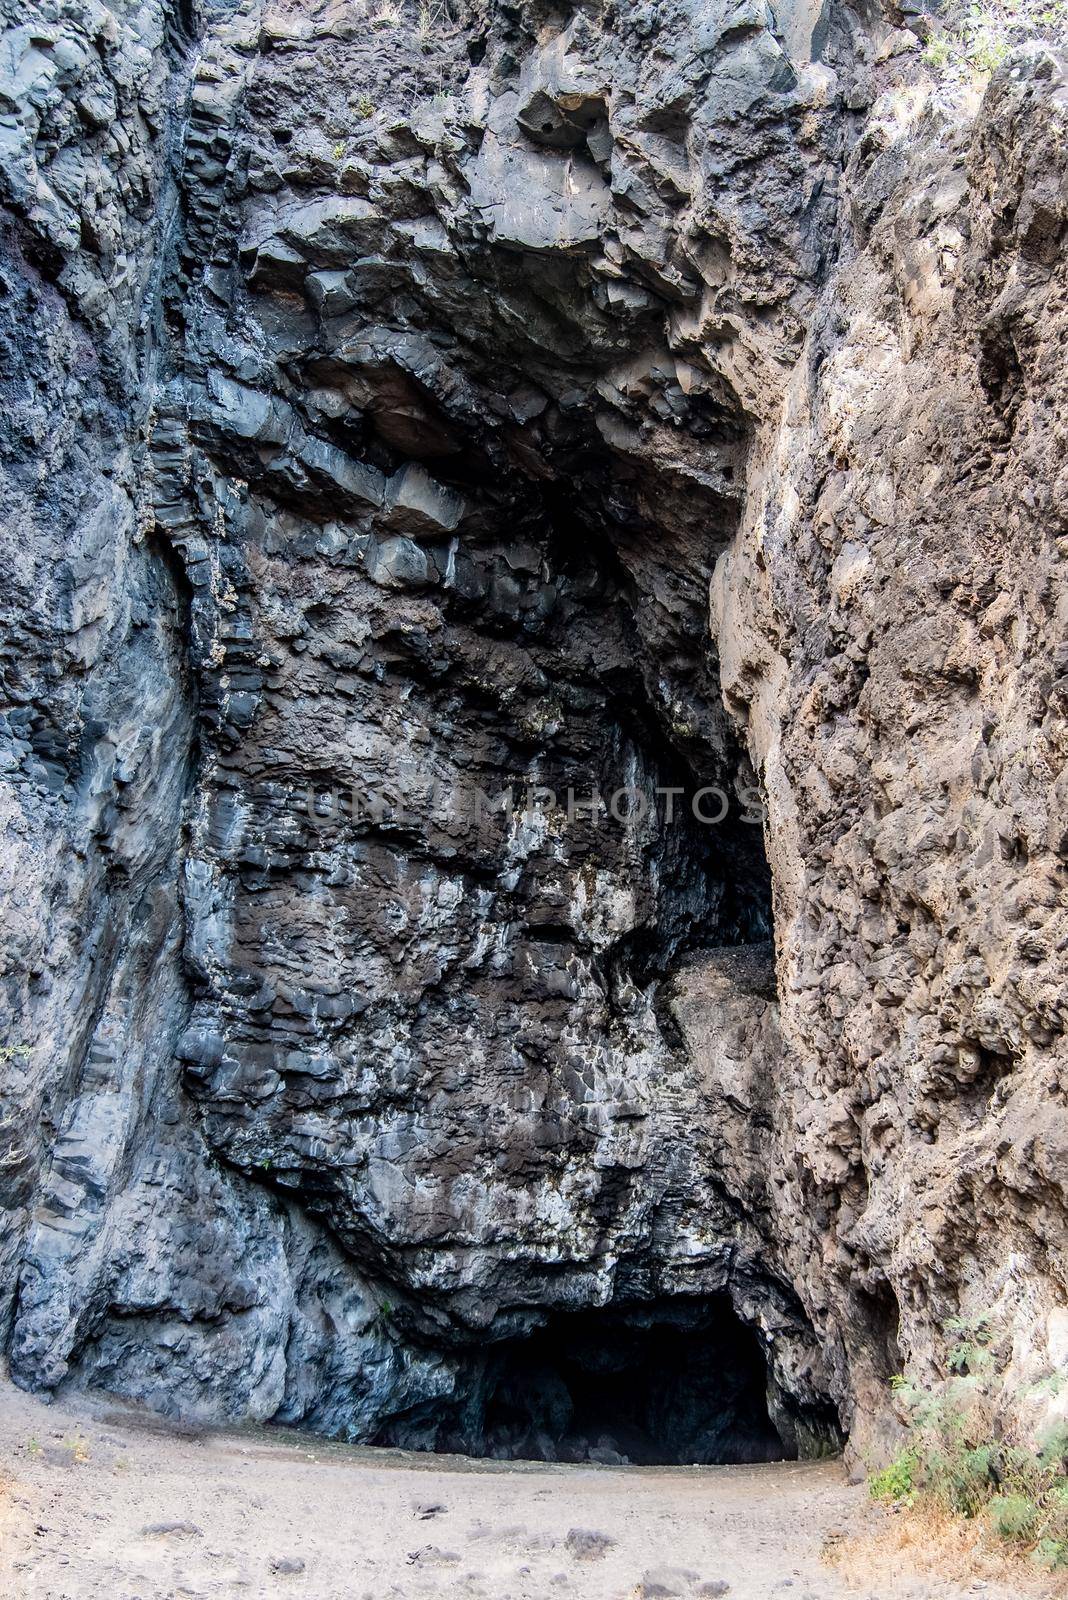 sacred kaneana cave near ohiki-lolo beach west side of oahu hawaii by digidreamgrafix